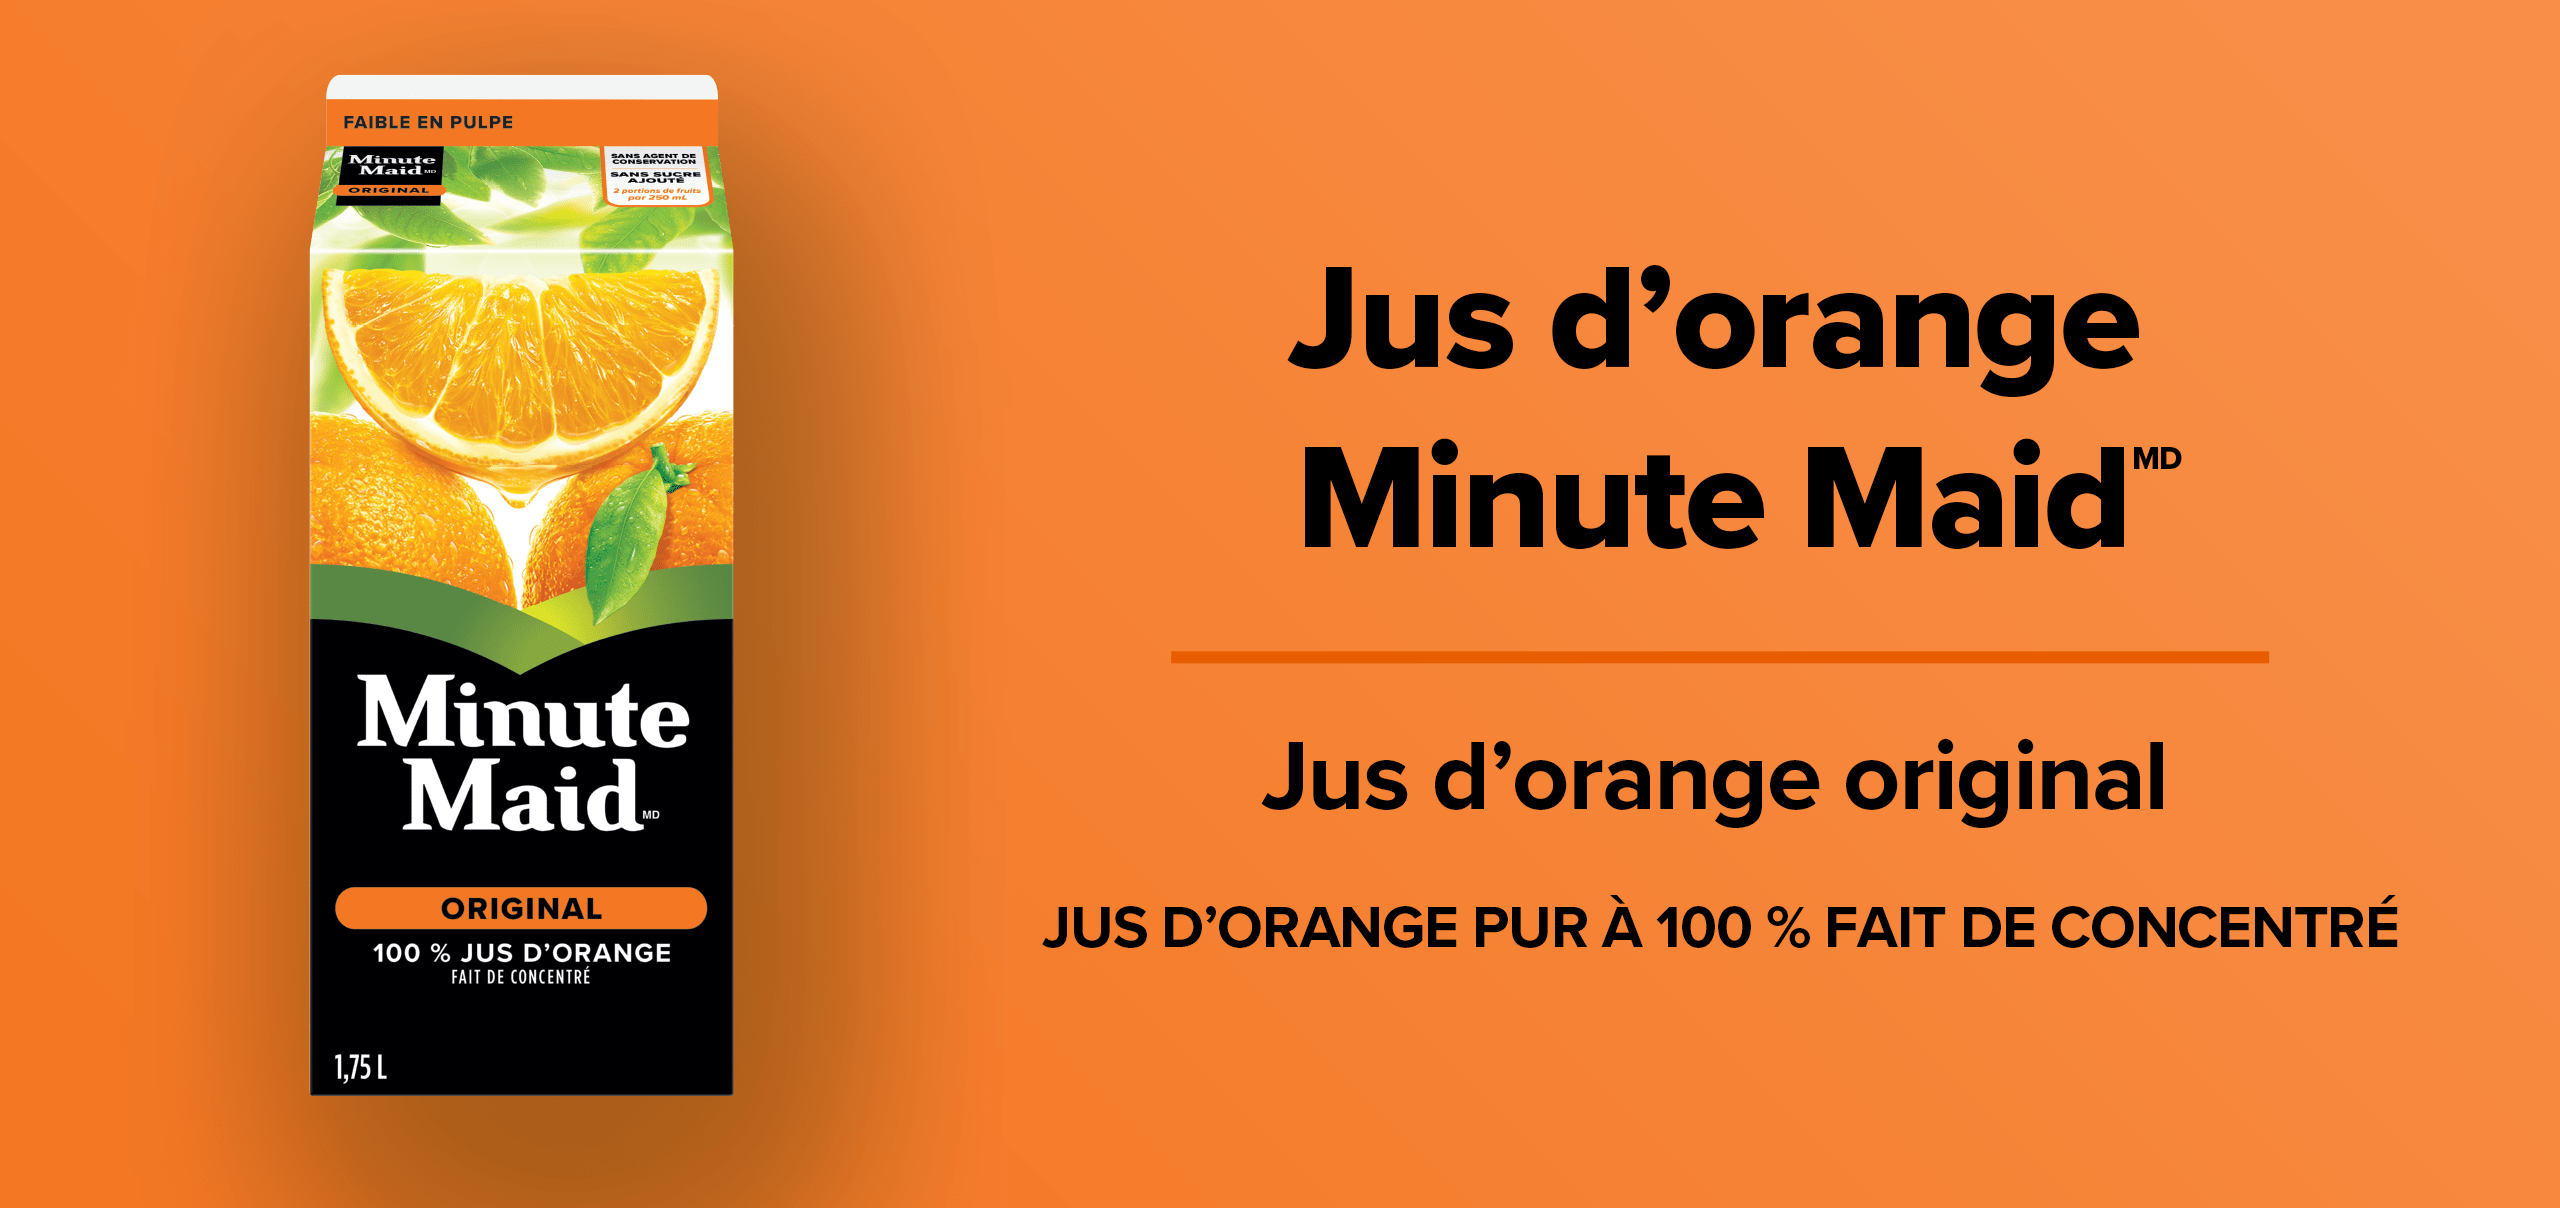 Jus d'orange Minute Maid. Jus d'orange original. Jus d'orange pur a 100 % fait de concentre